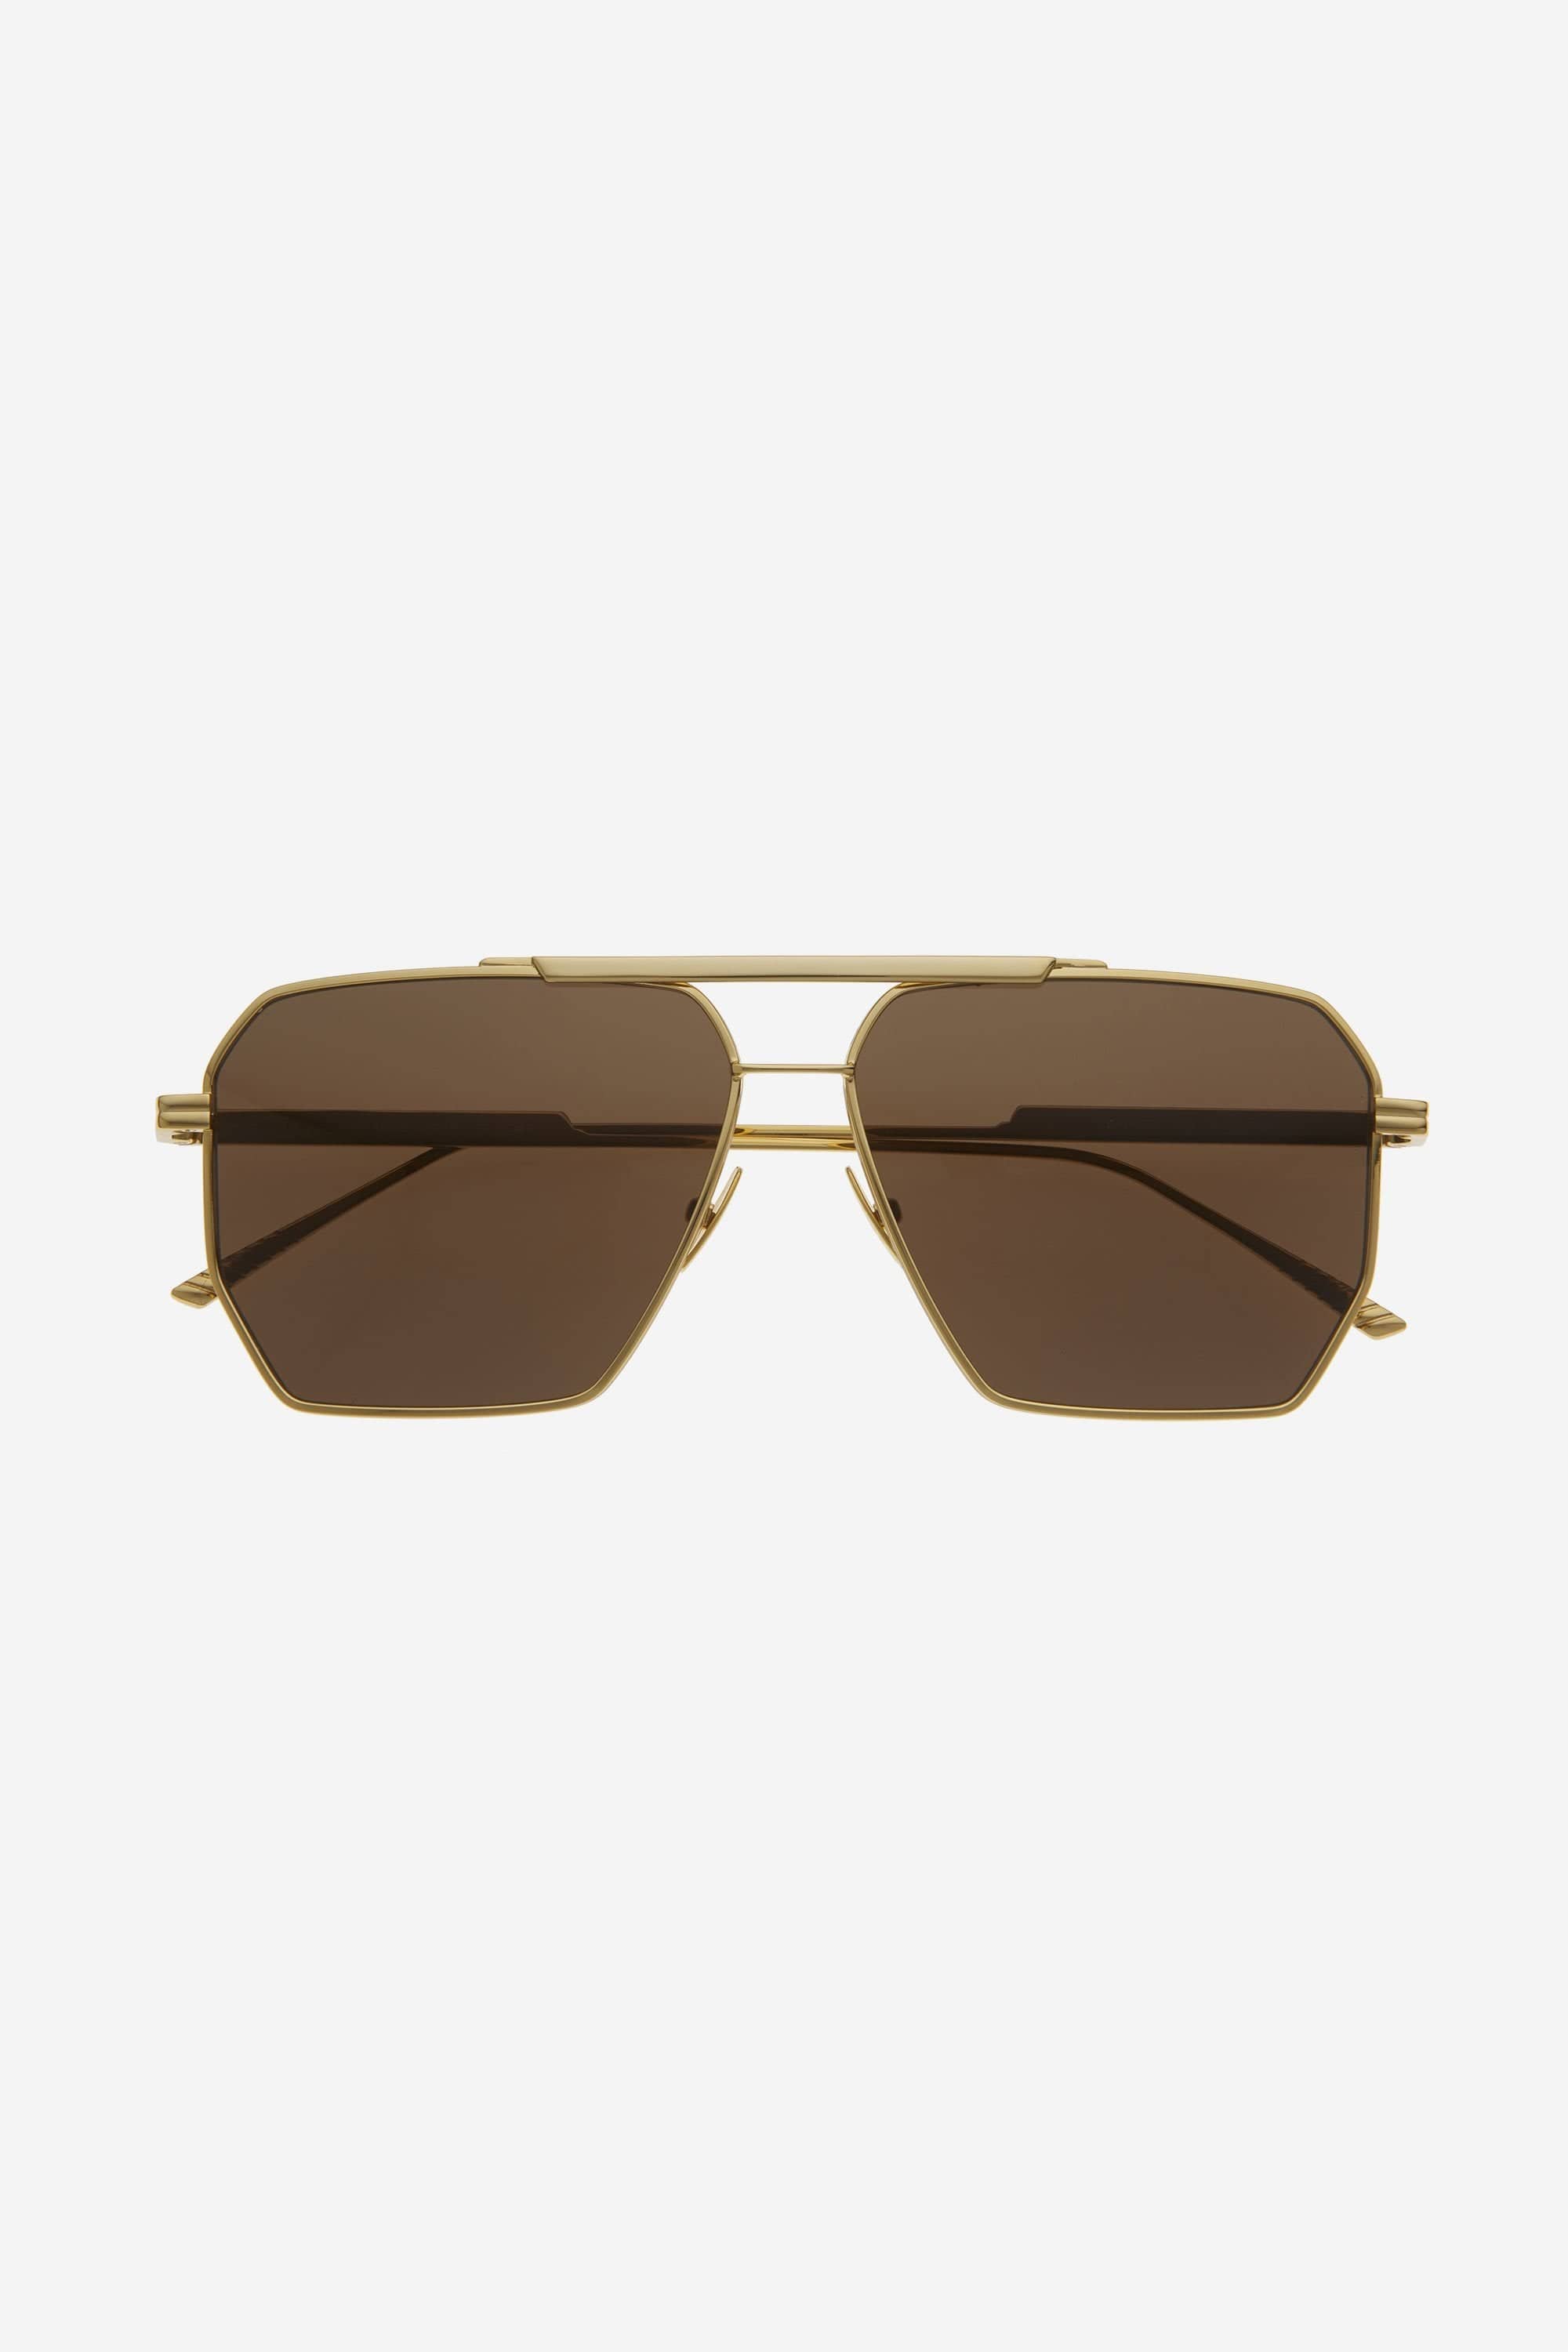 Bottega Veneta caravan gold and brown sunglasses - Eyewear Club